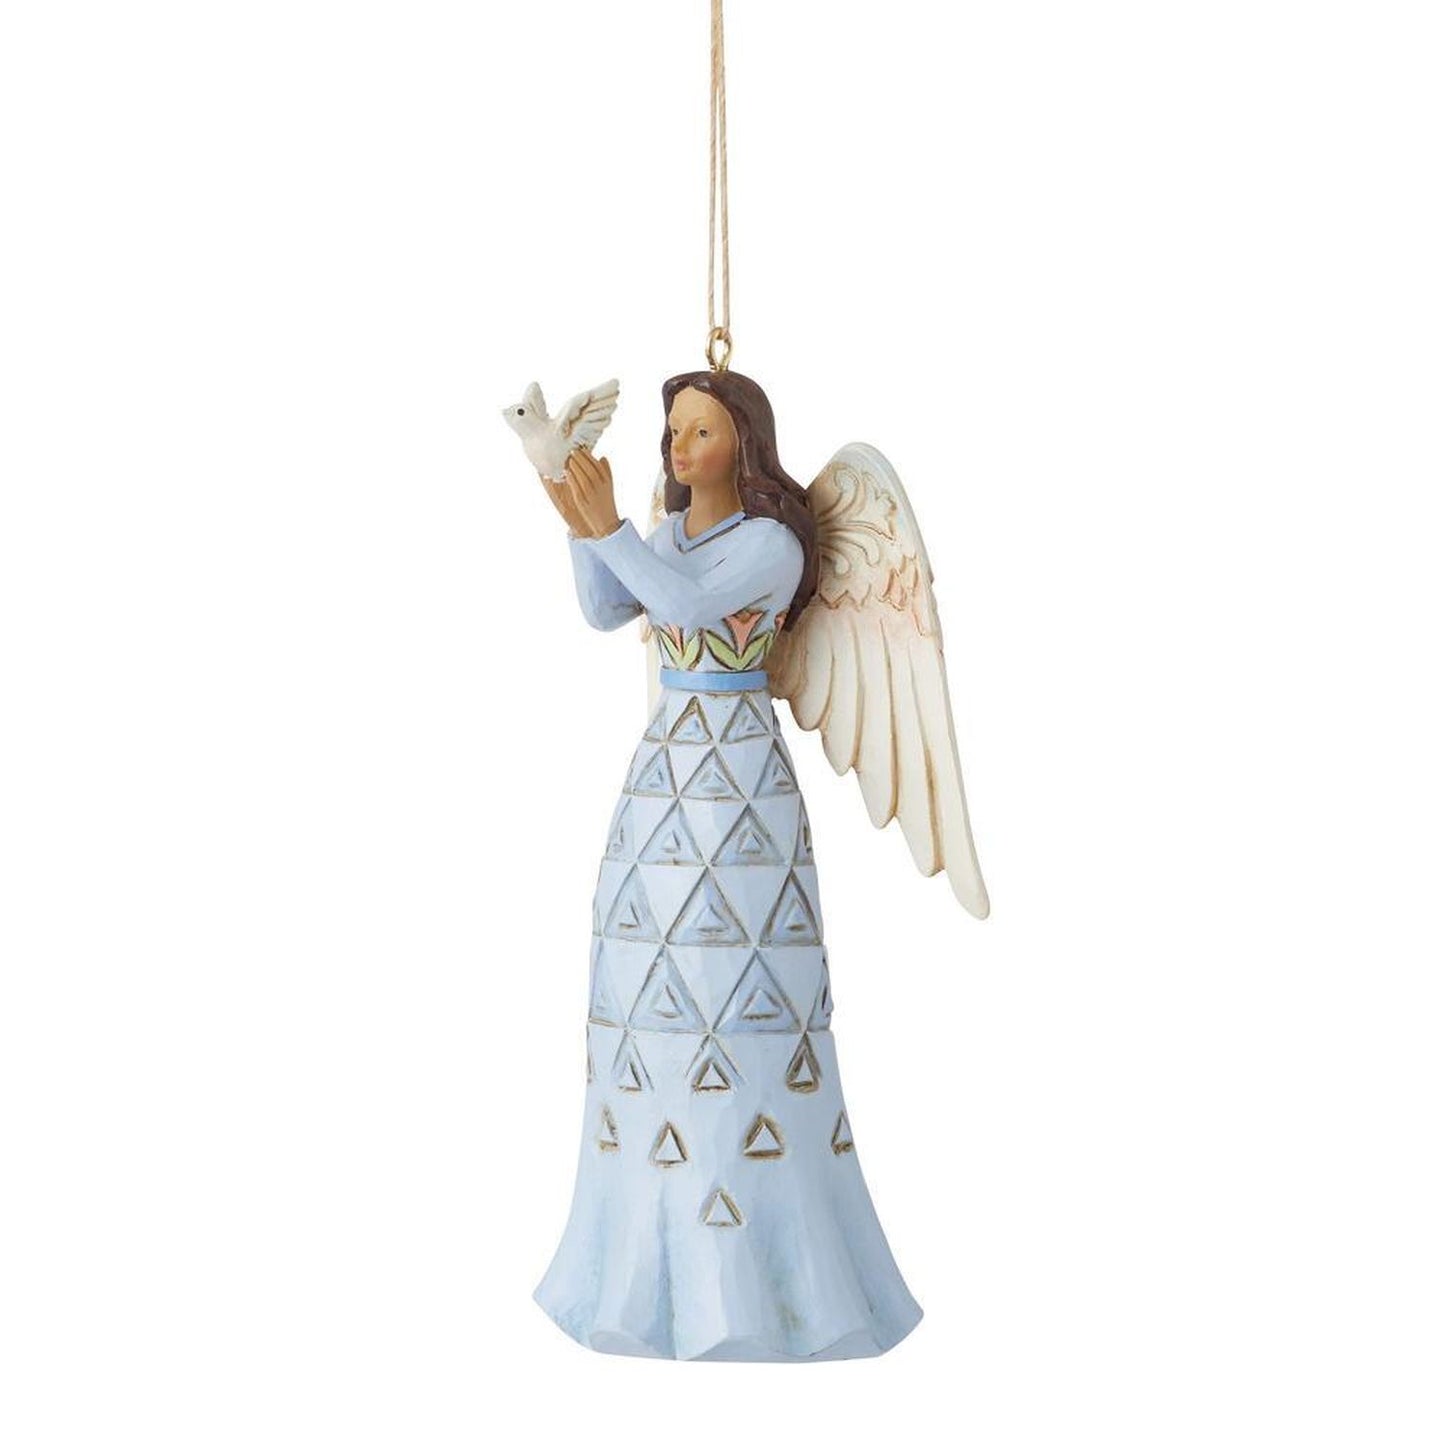 Enesco Jim Shore Heartwood Creek Bereavement Angel Ornament